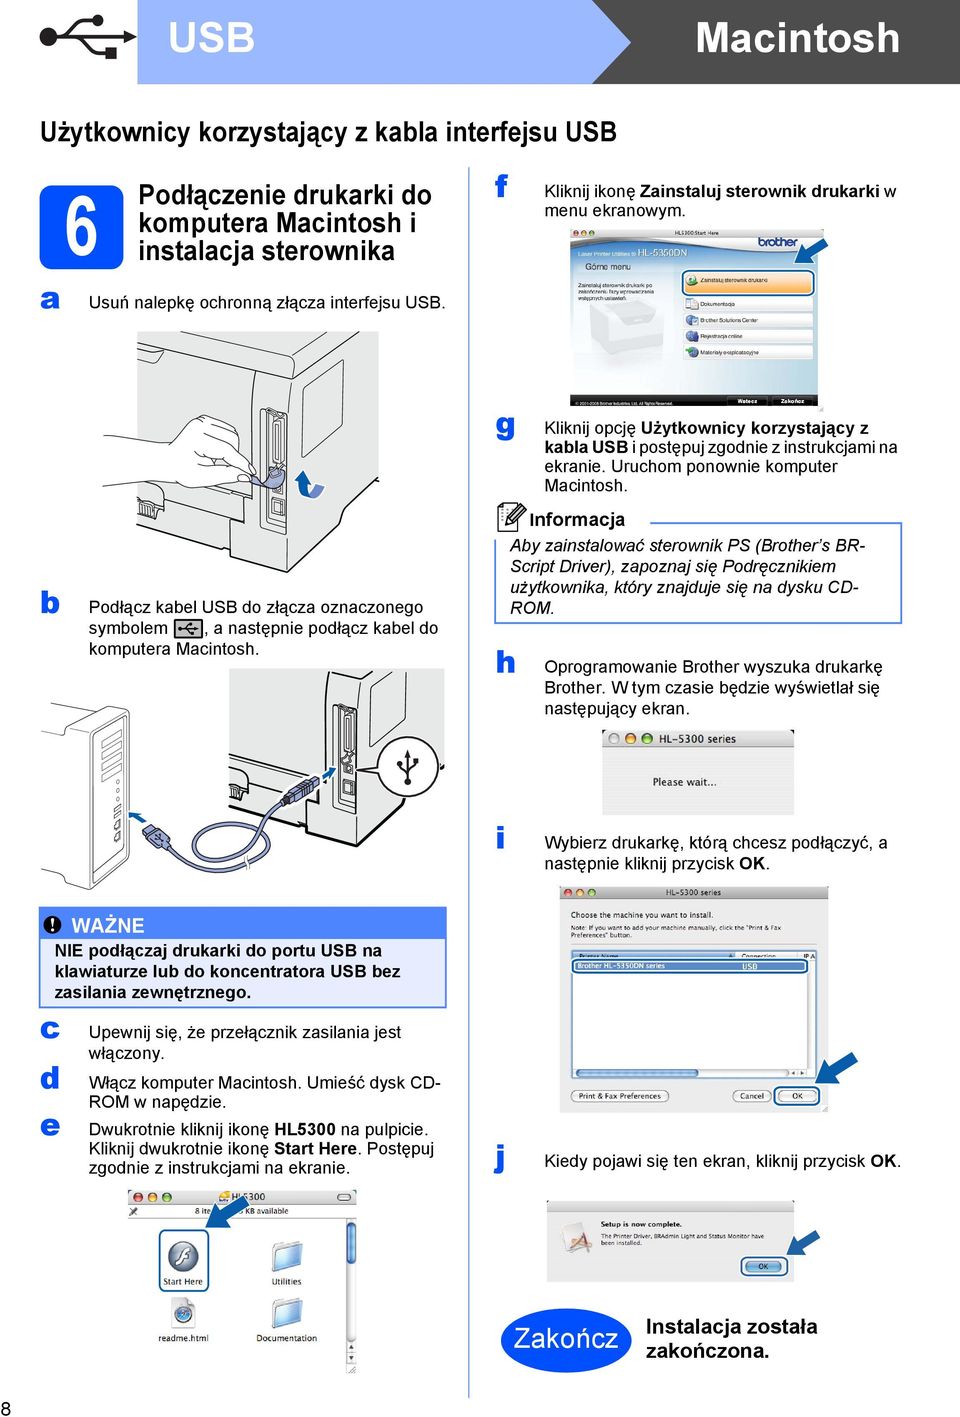 g h Kliknij opcję Użytkownicy korzystający z kabla USB i postępuj zgodnie z instrukcjami na ekranie. Uruchom ponownie komputer Macintosh.